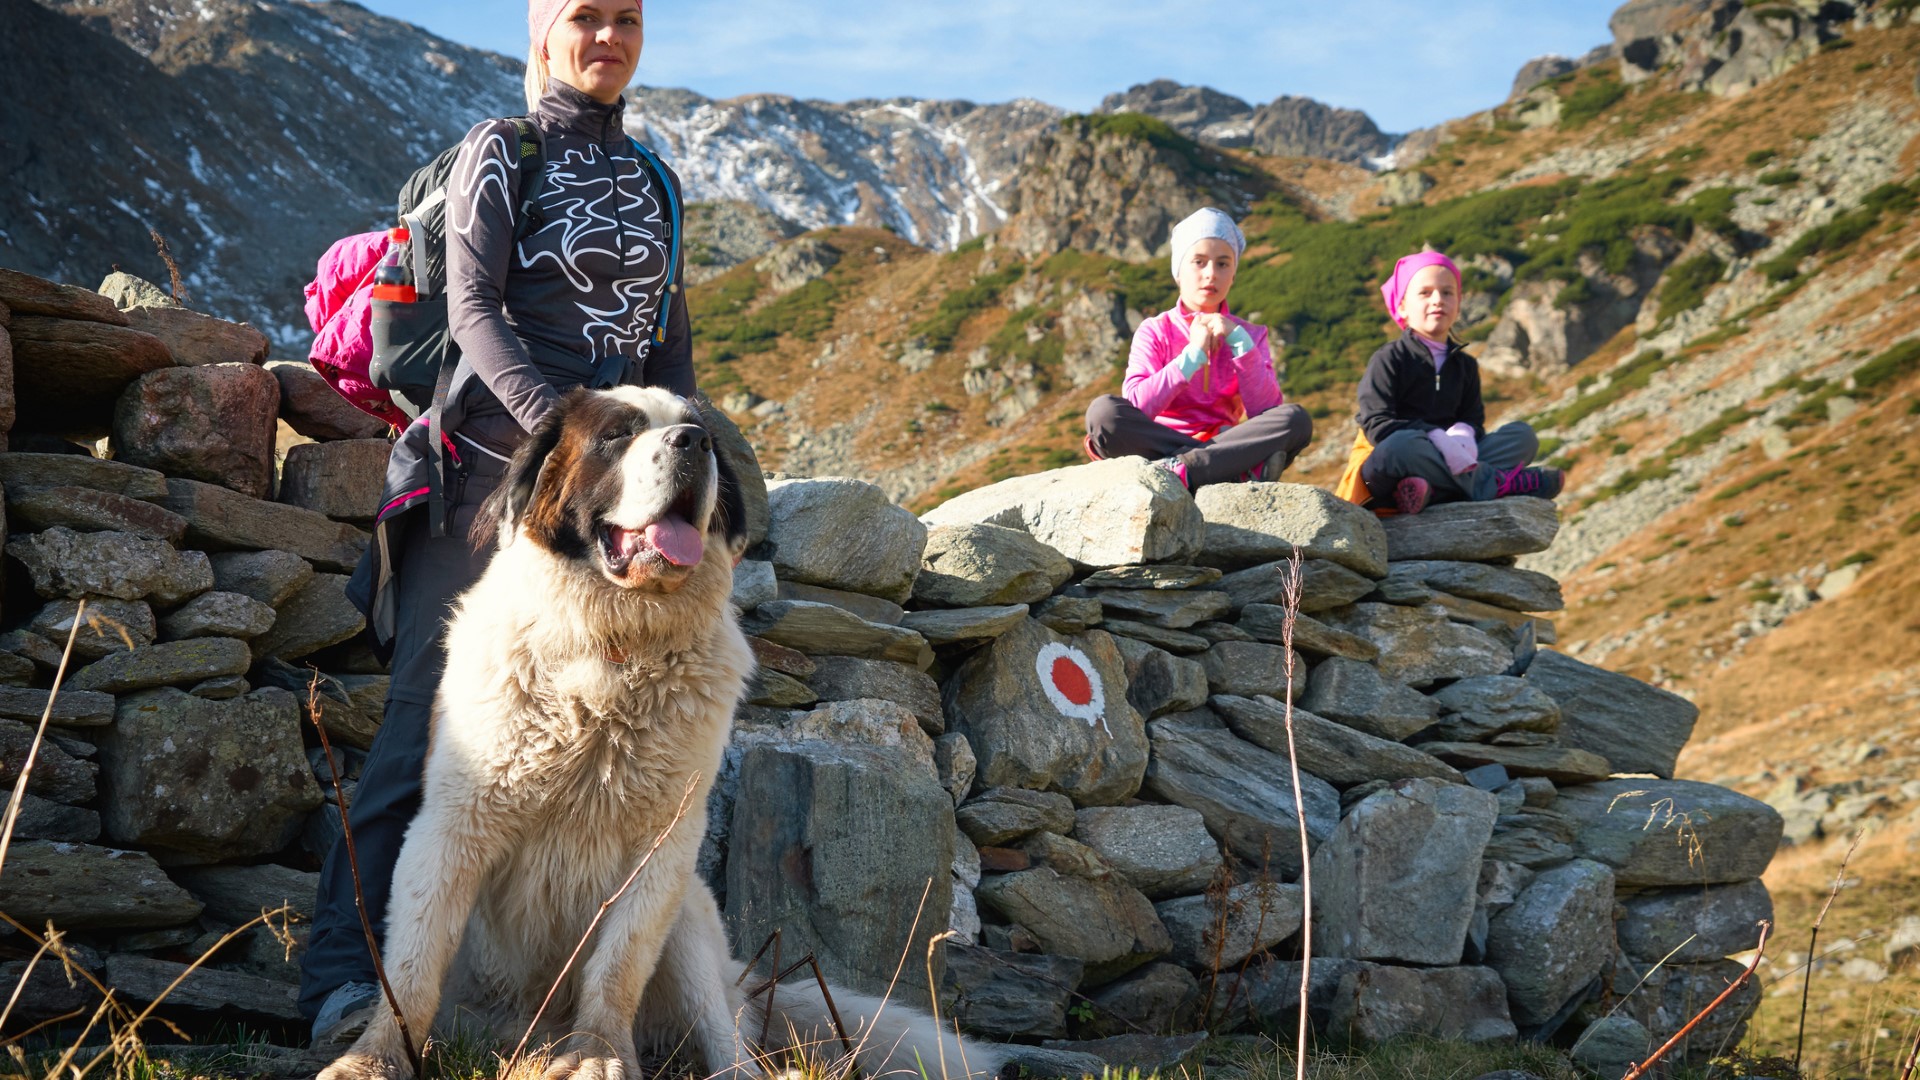 A Saint Bernard accompanies a family on a hike